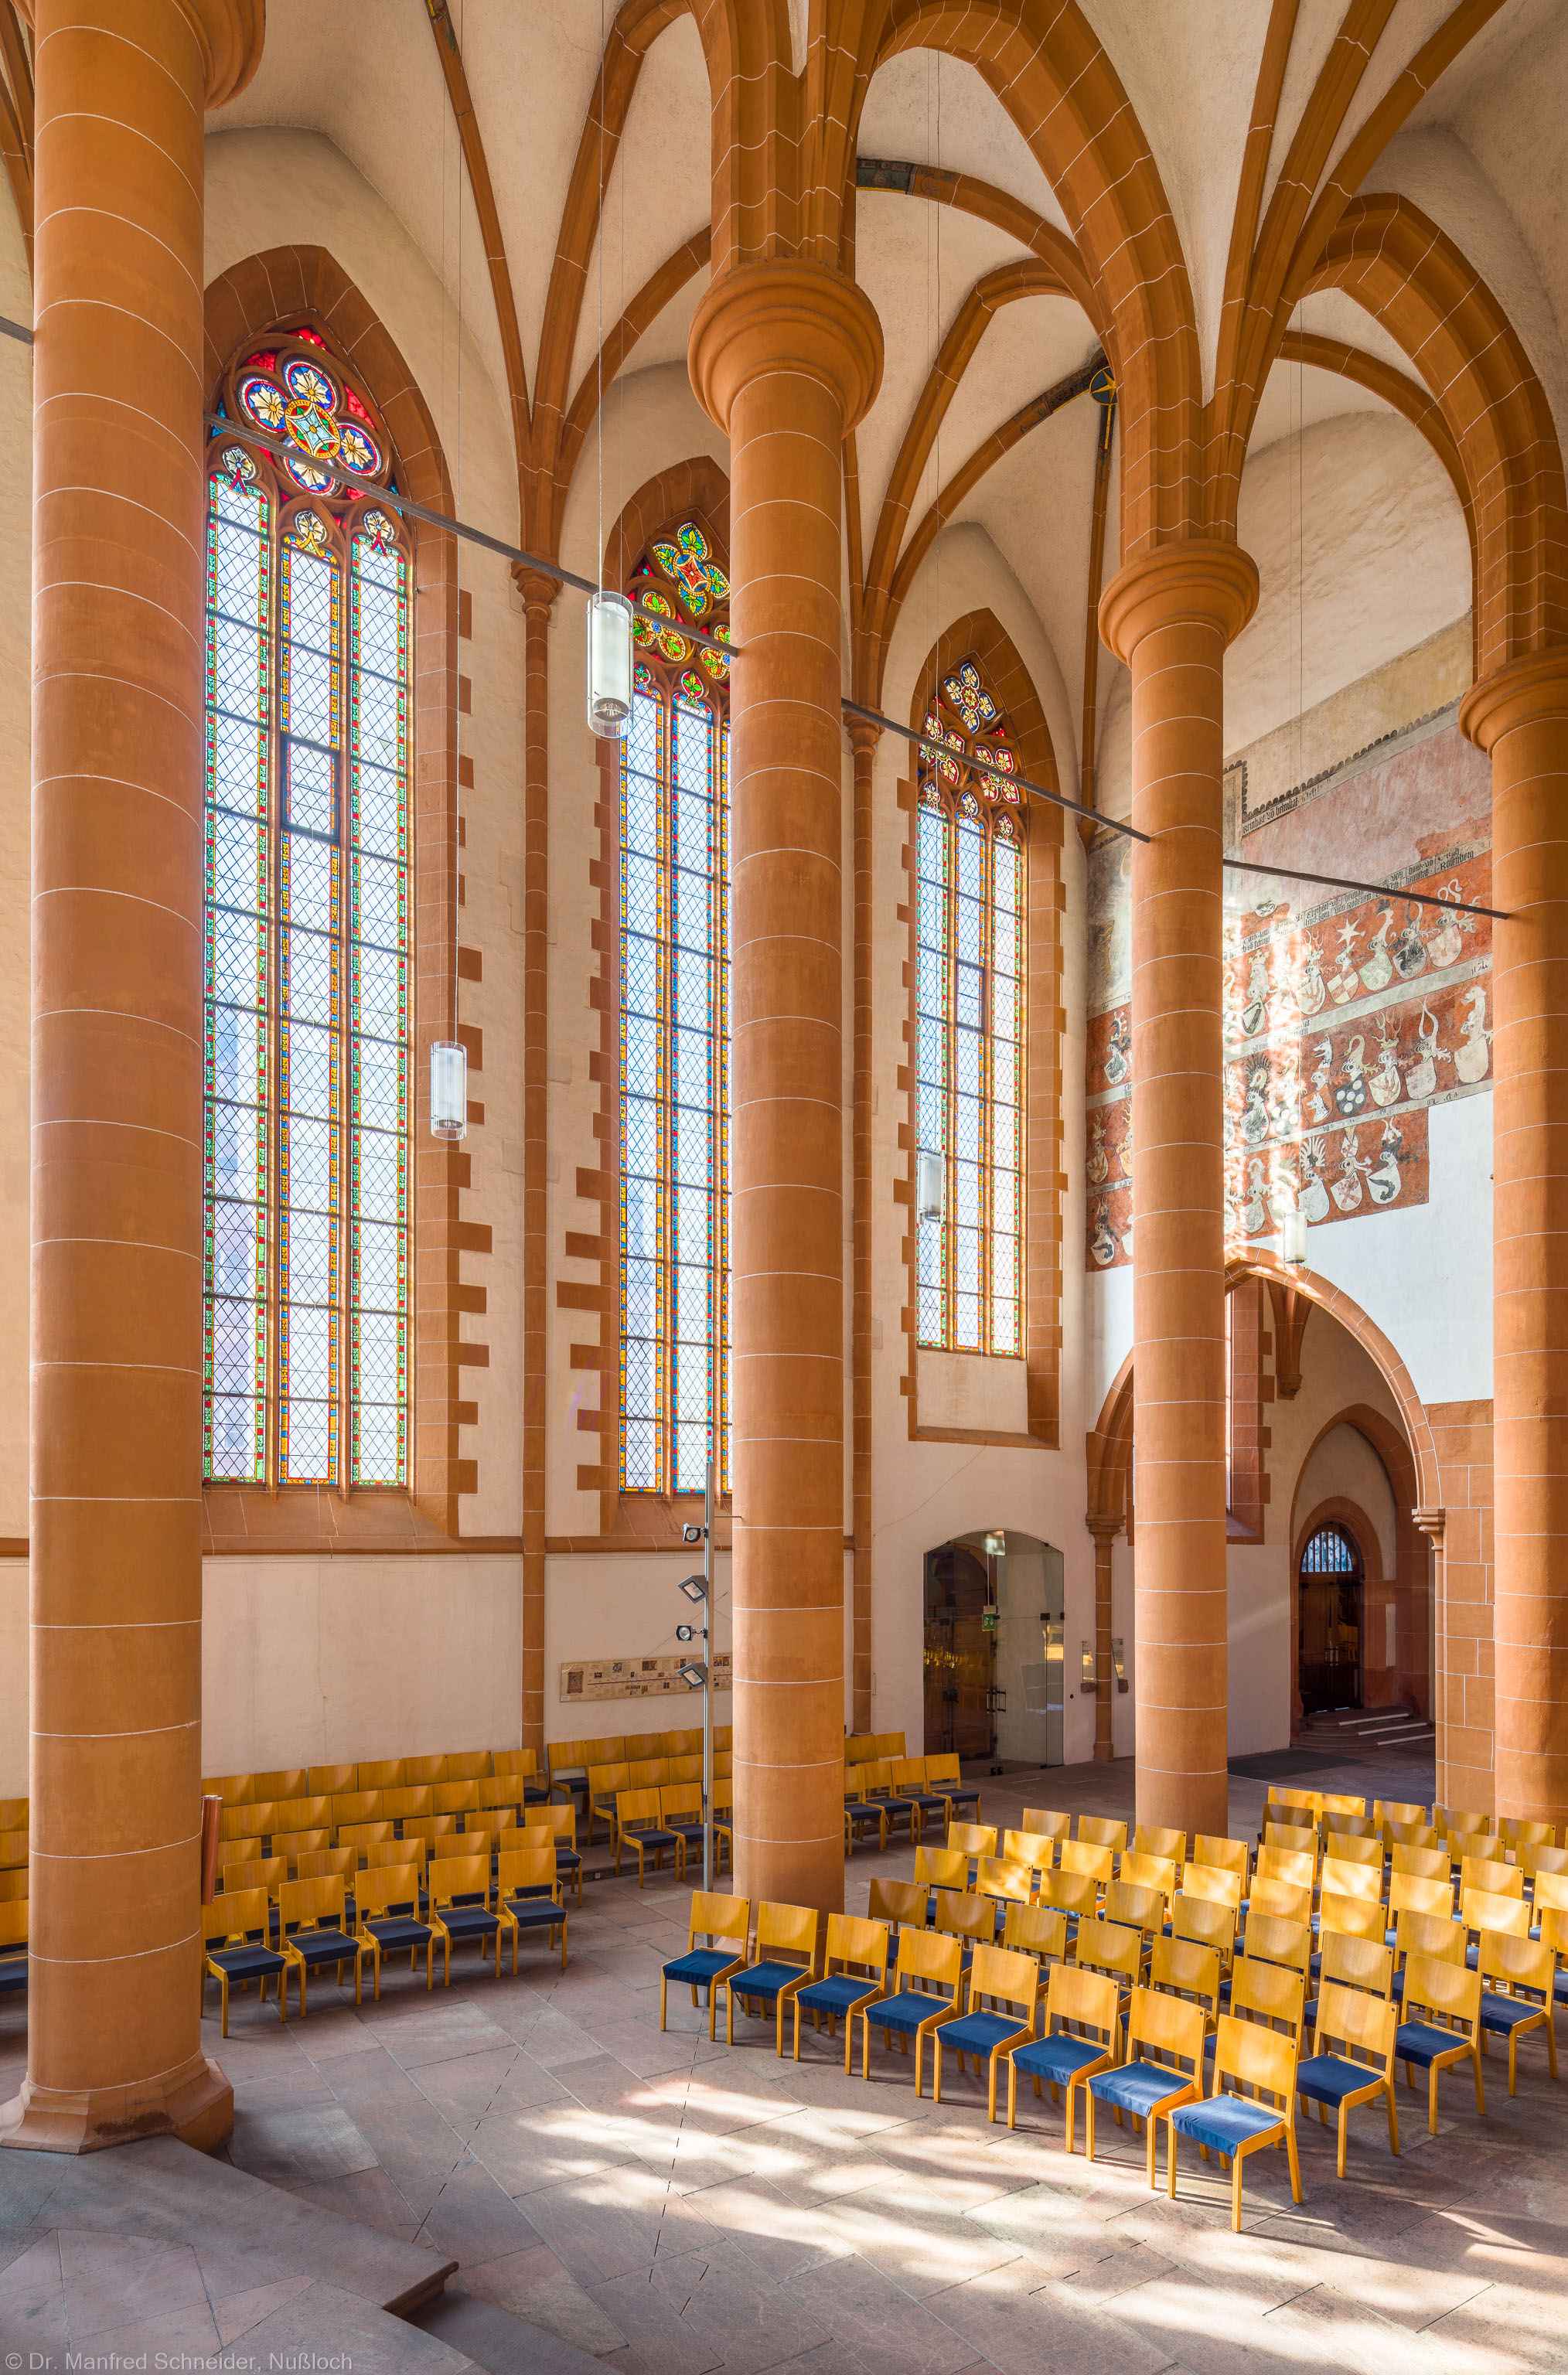 Heidelberg - Heiliggeistkirche - Chor - Blick von der Kanzel in den Chor nach Südwesten mit Säulen, Gewölbe und südlicher Trennmauer (aufgenommen im Oktober 2015, am späten Vormittag)